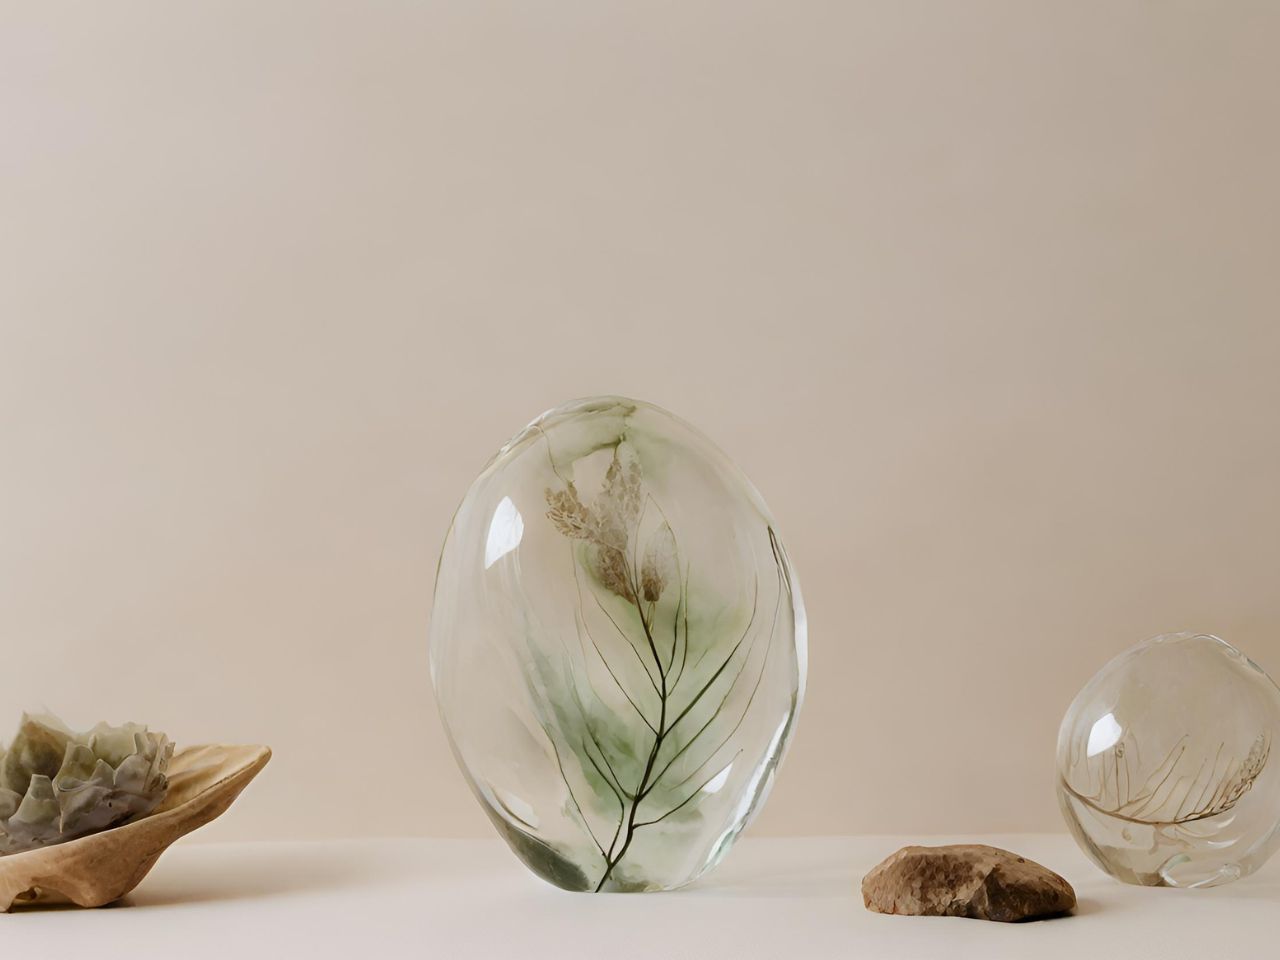 Nature-Inspired Glass Art